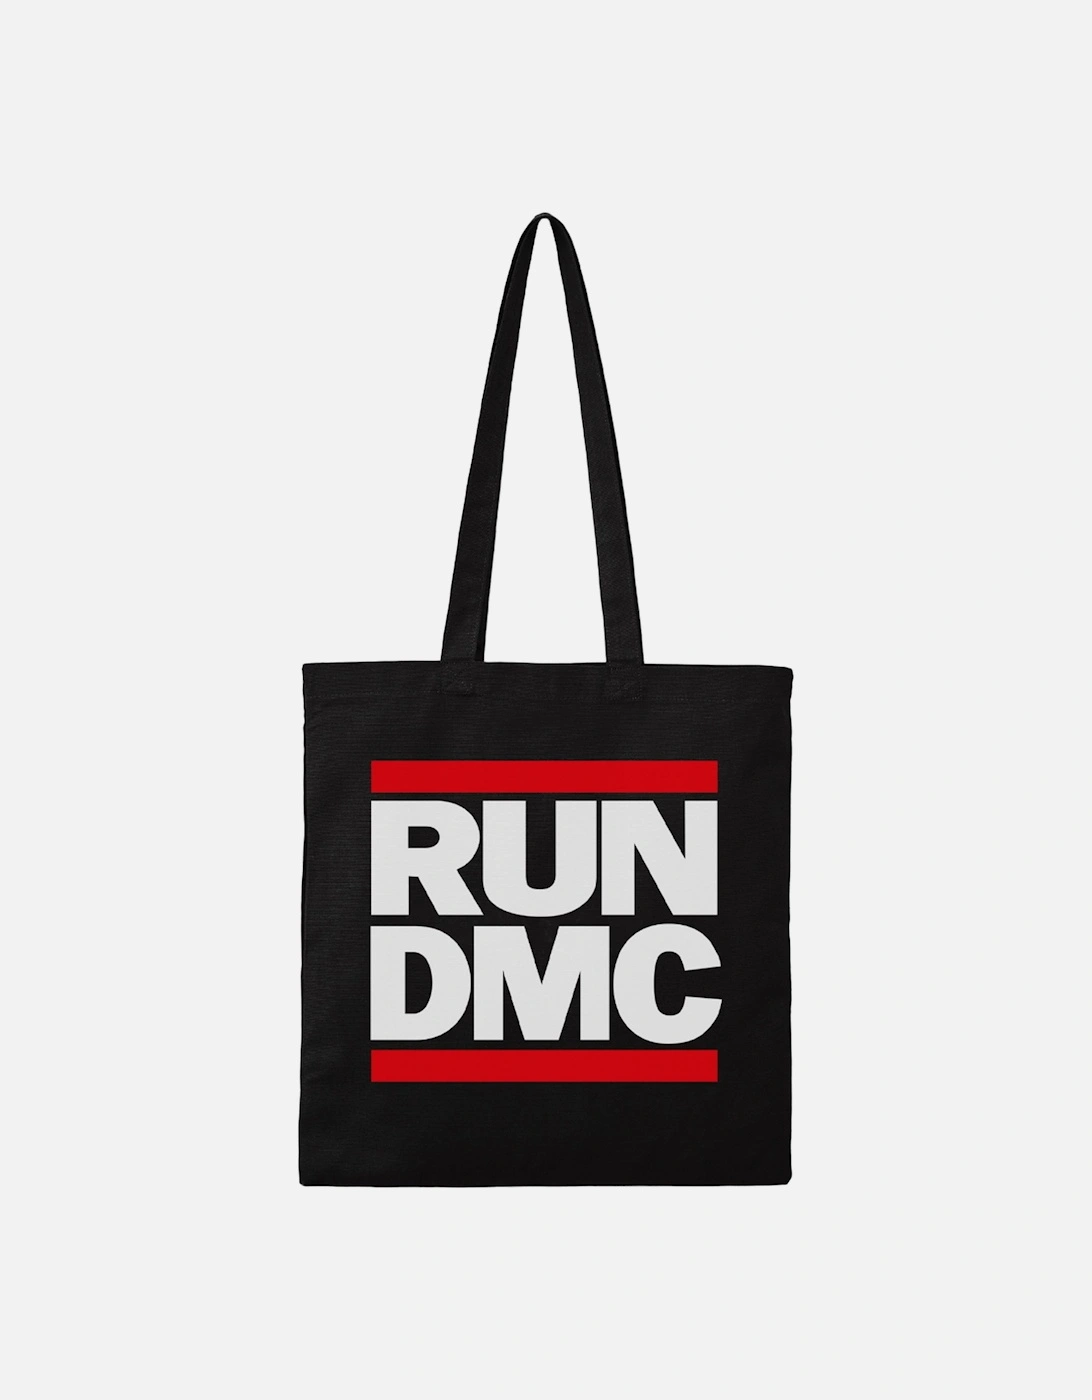 Run DMC Tote Bag, 2 of 1